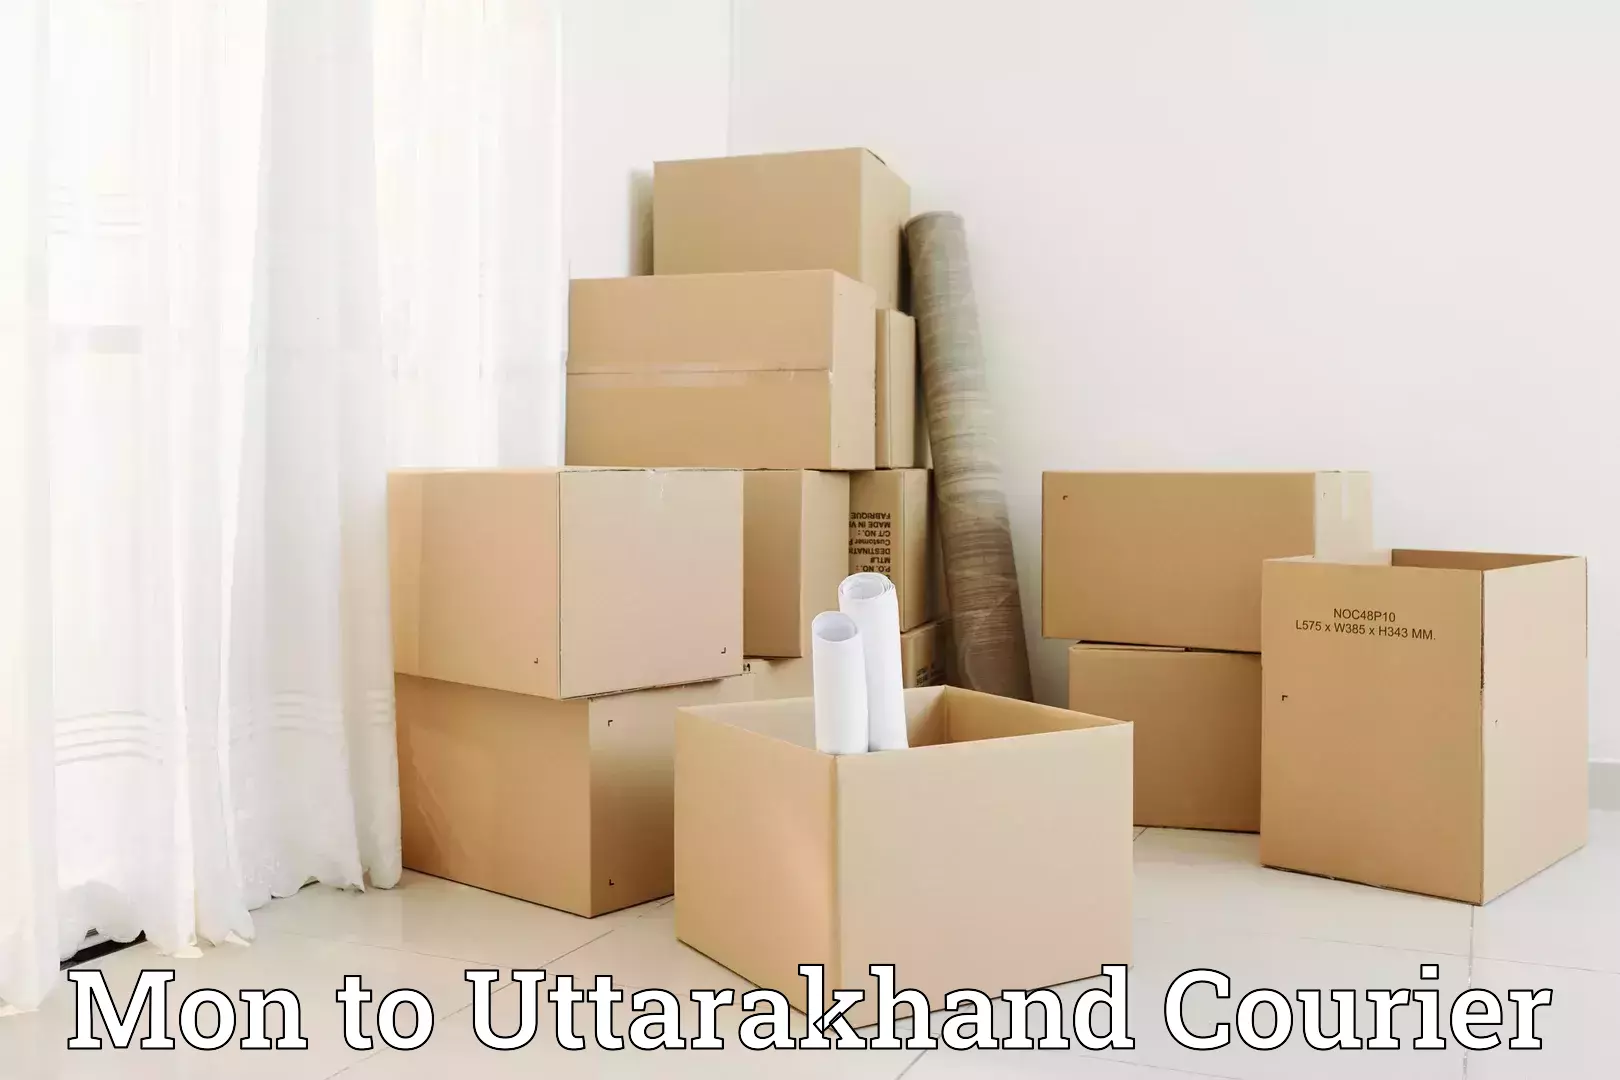 Household goods transport service Mon to Uttarakhand